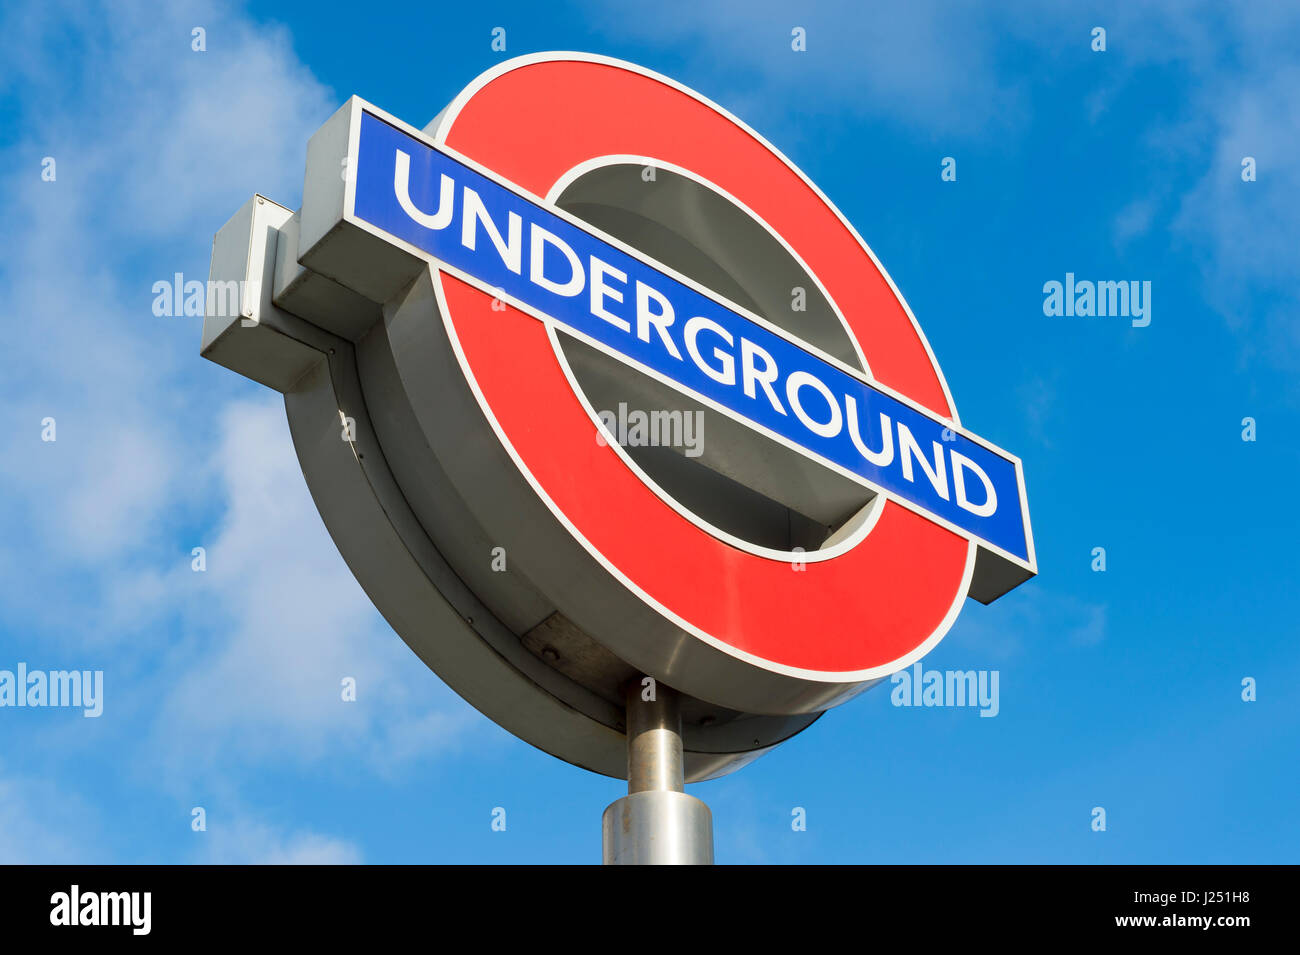 Londres - le 13 novembre 2016 : London Underground classique cocarde signe, une icône à valoir sur le manager Frank Pick au début des années 1900, en vertu d'un bleu Banque D'Images